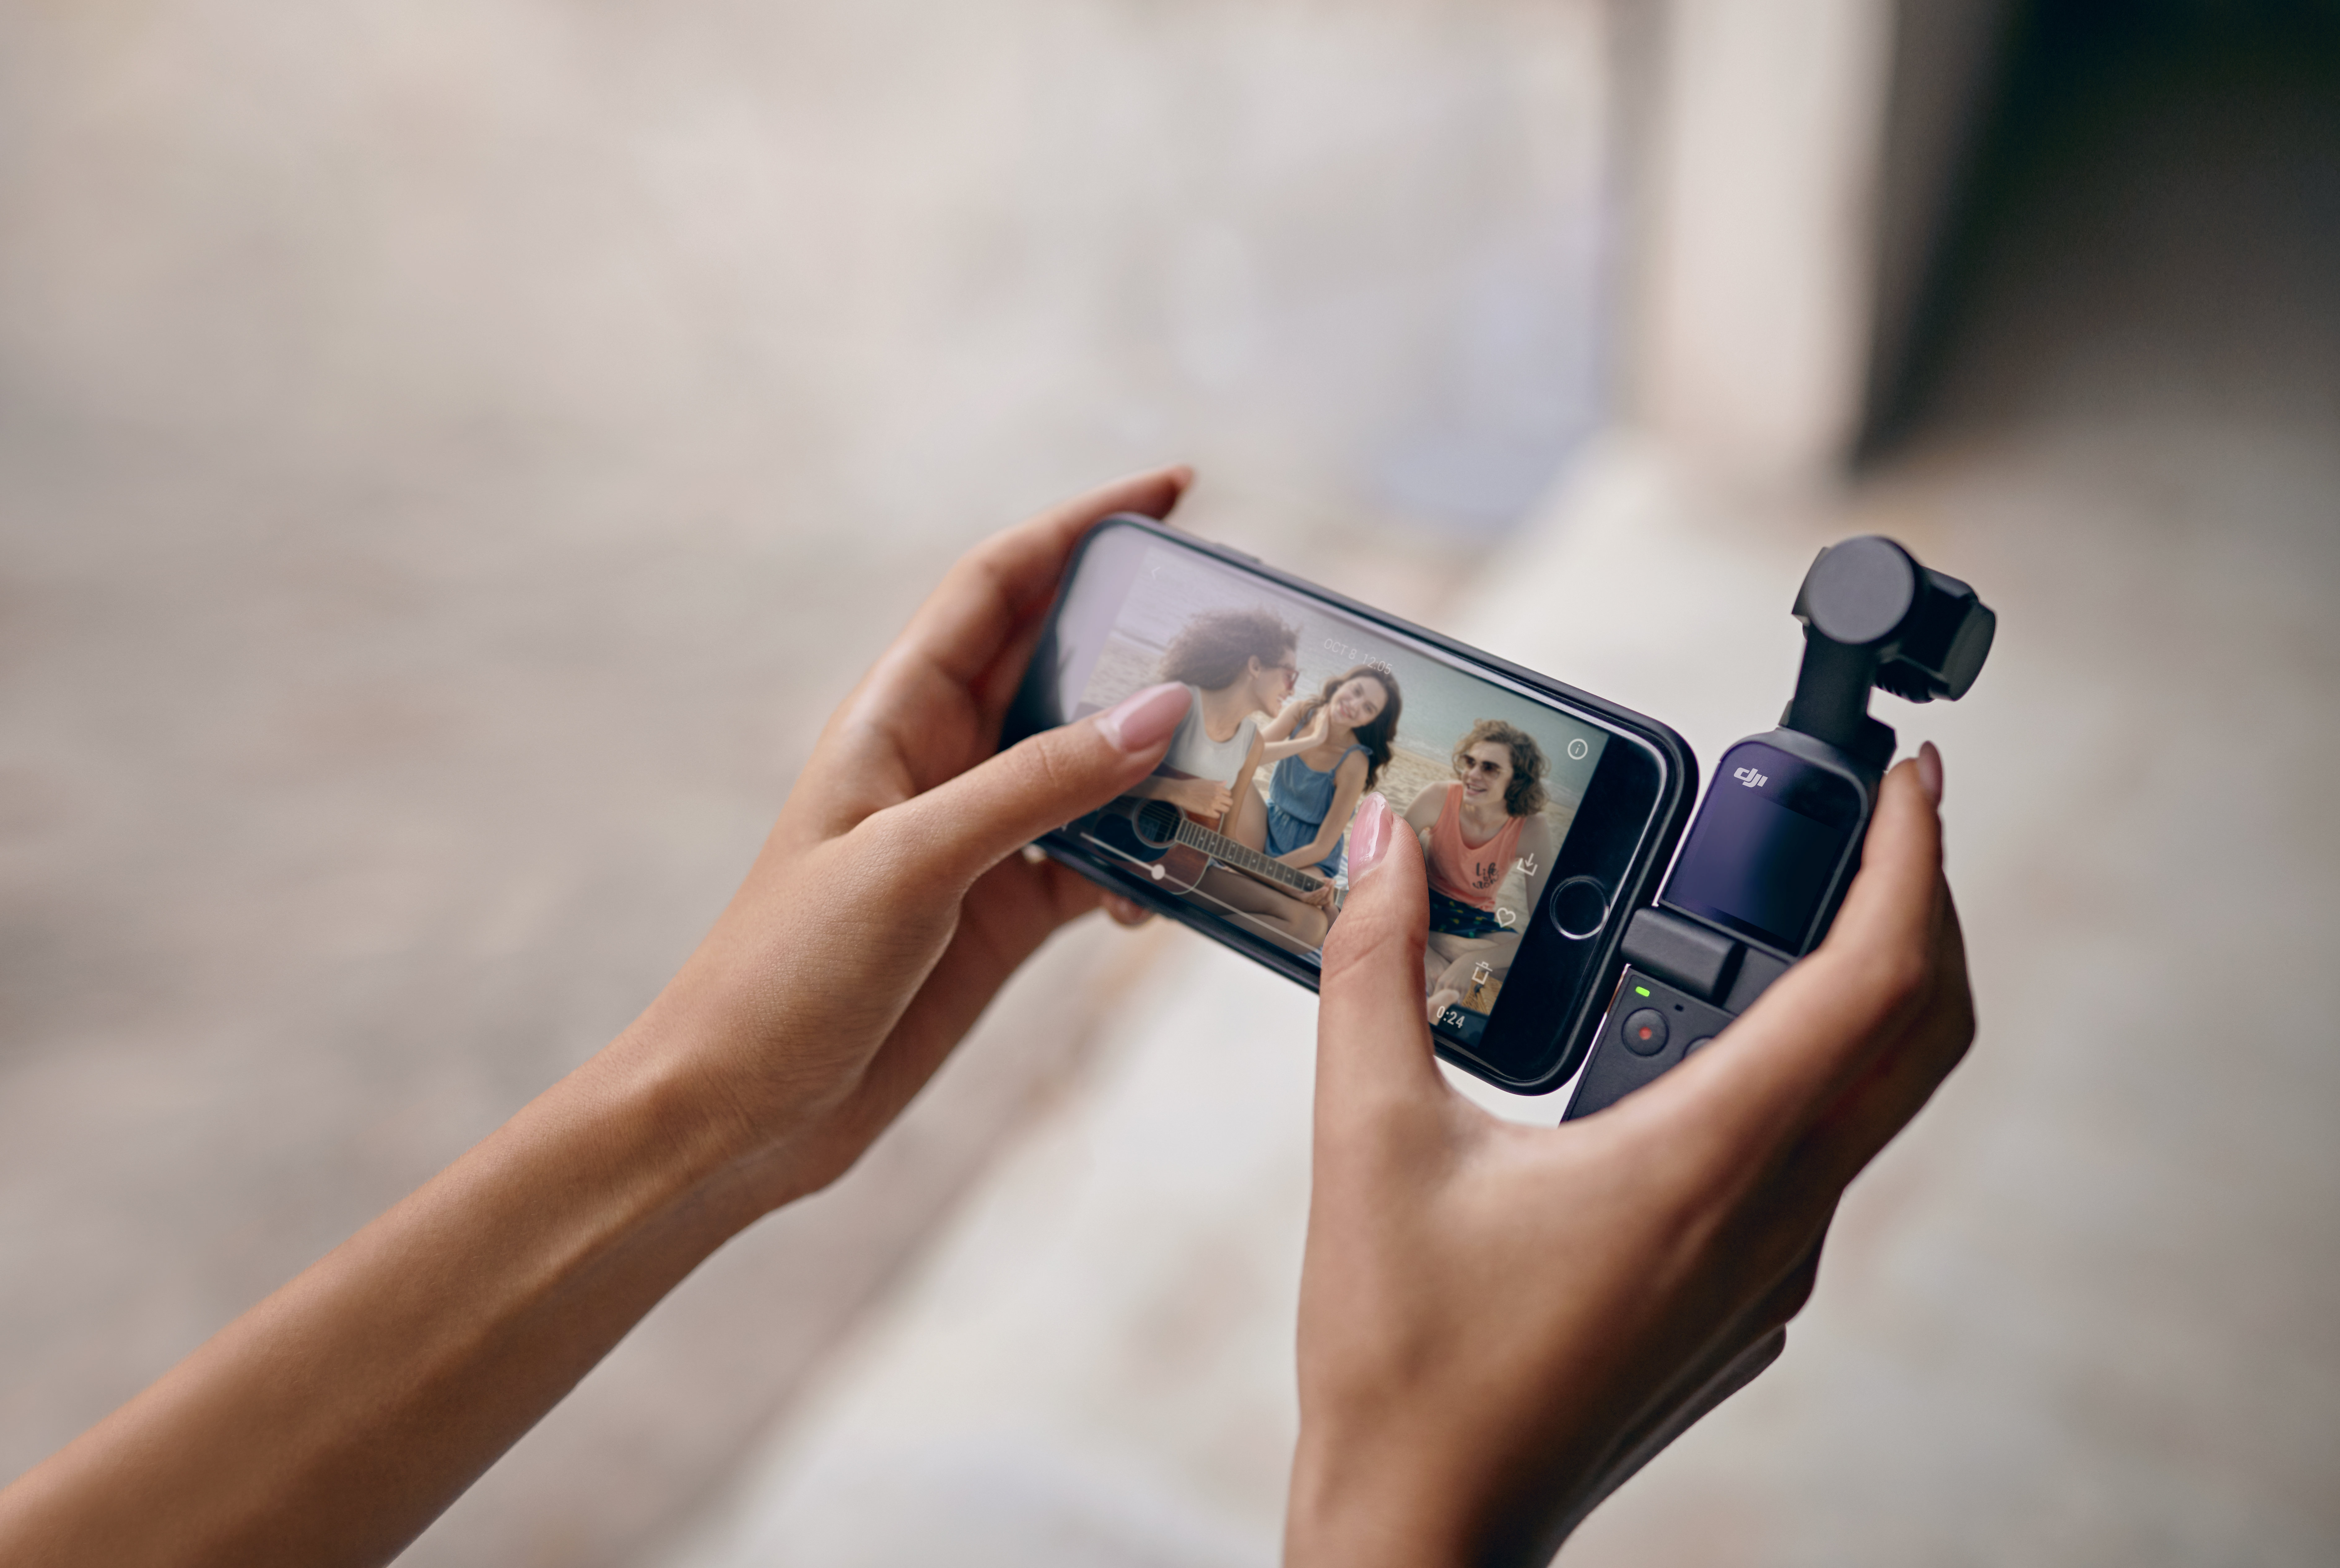 Um acessório conecta o Osmo Pocket ao smartphone e transforma a tela dele em monitor para fotografar e filmar